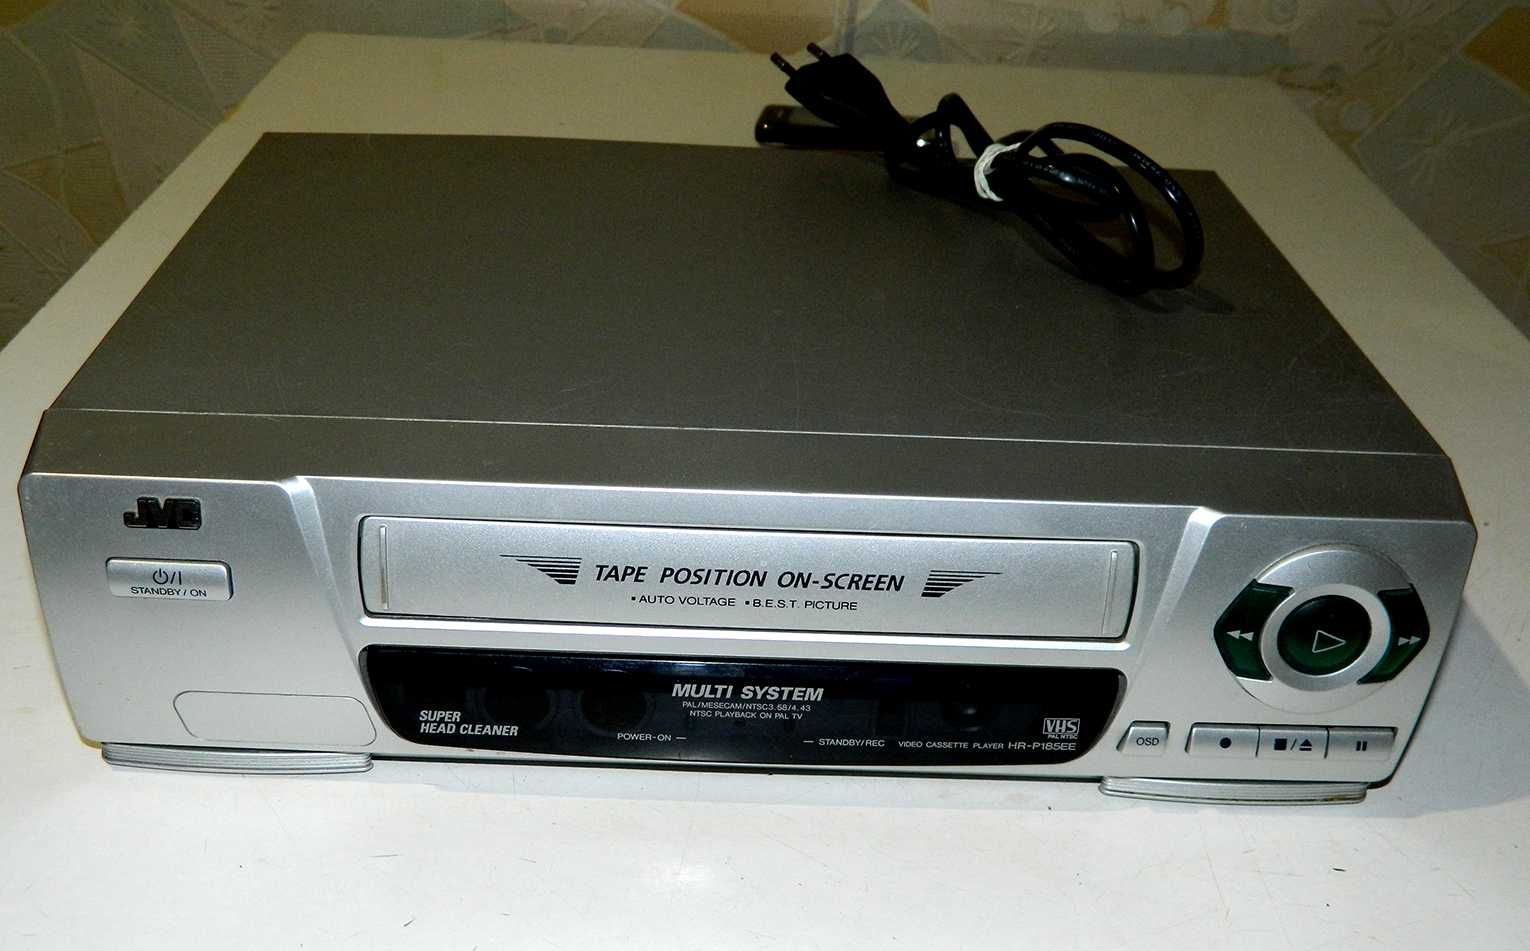 Пишущий кассетный видеоплеер JVC HR-P185EE